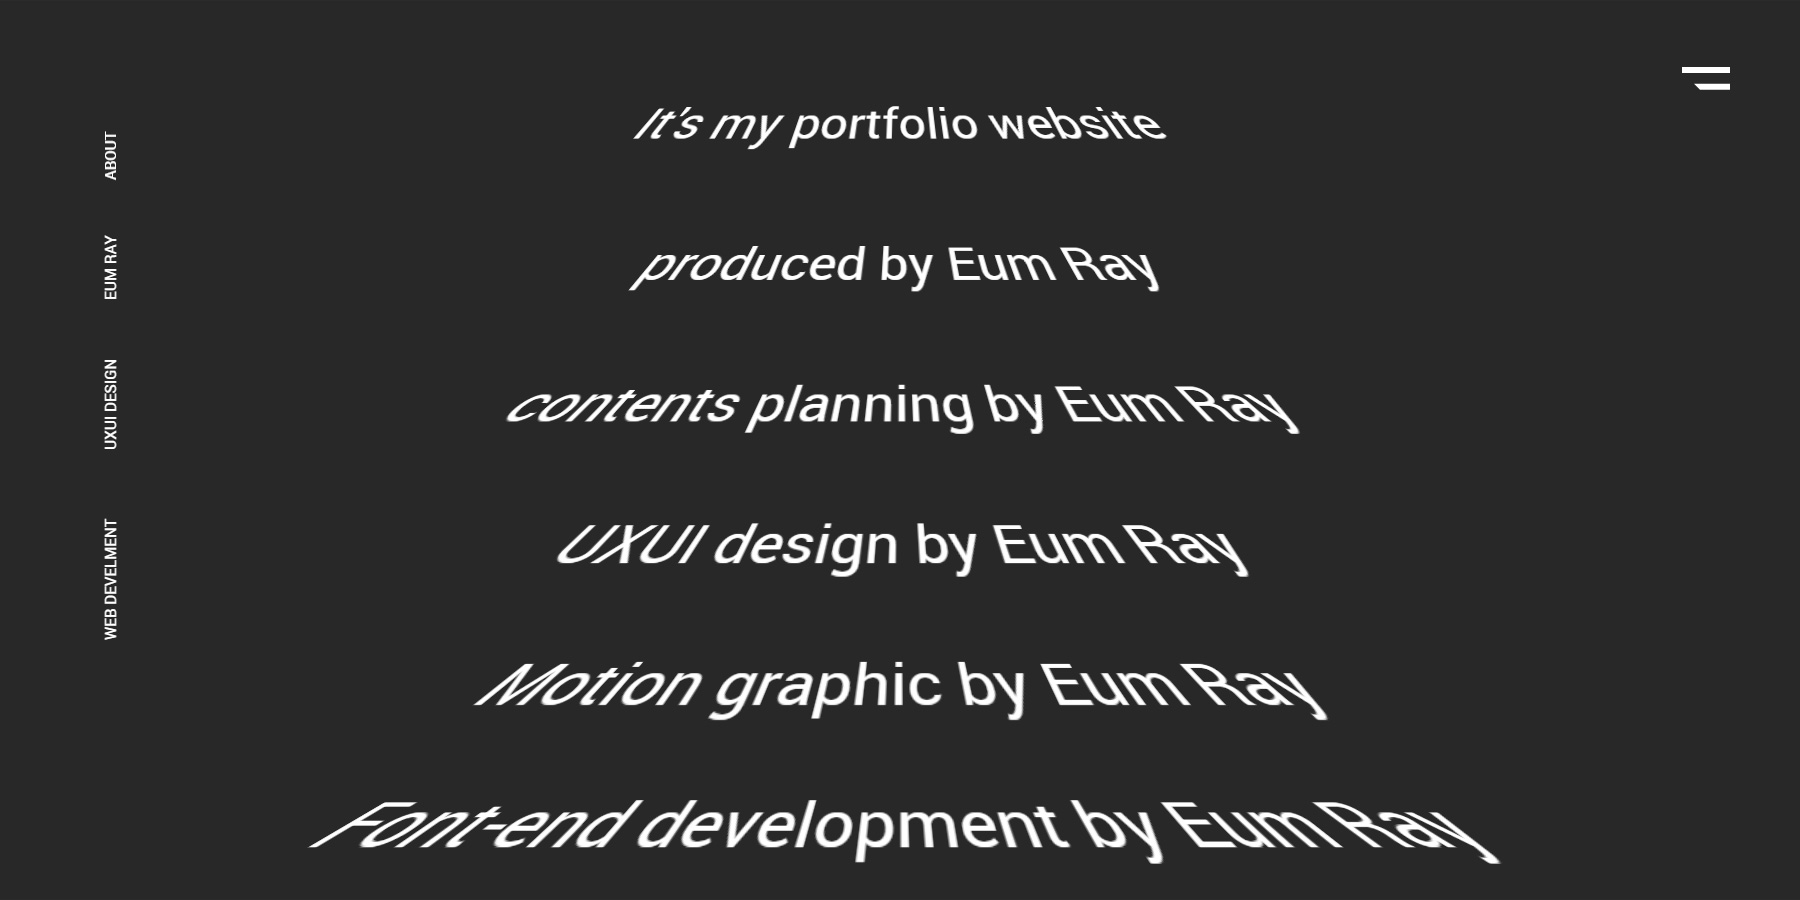 Eum Ray portfolio - Website of the Day